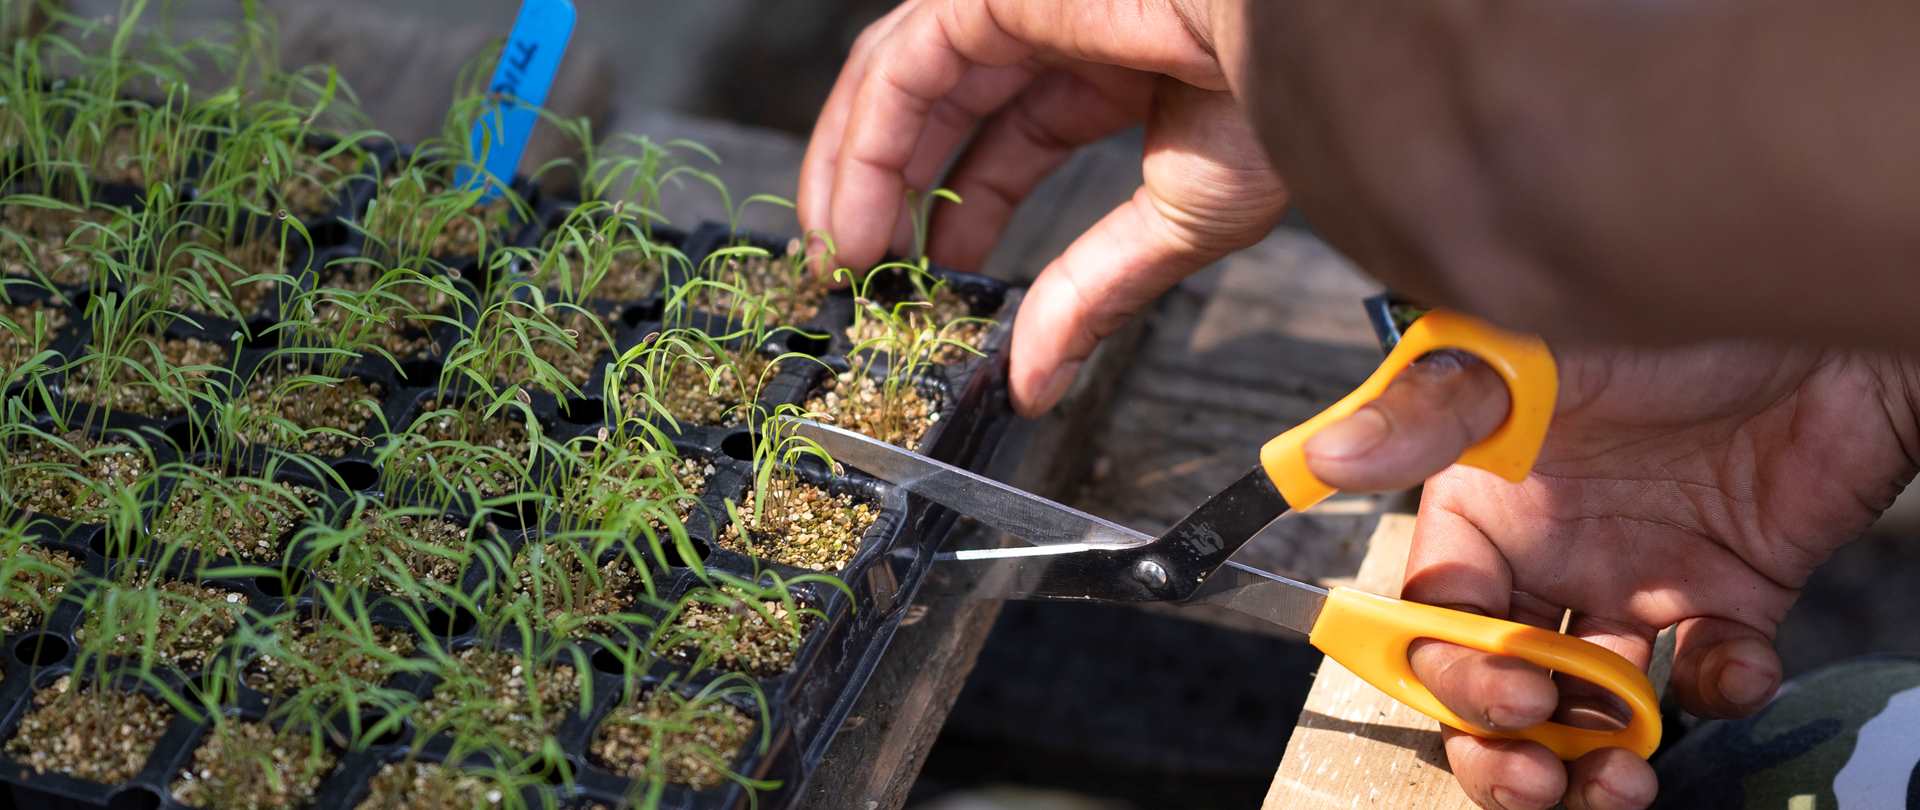 Hands tending to seedlings